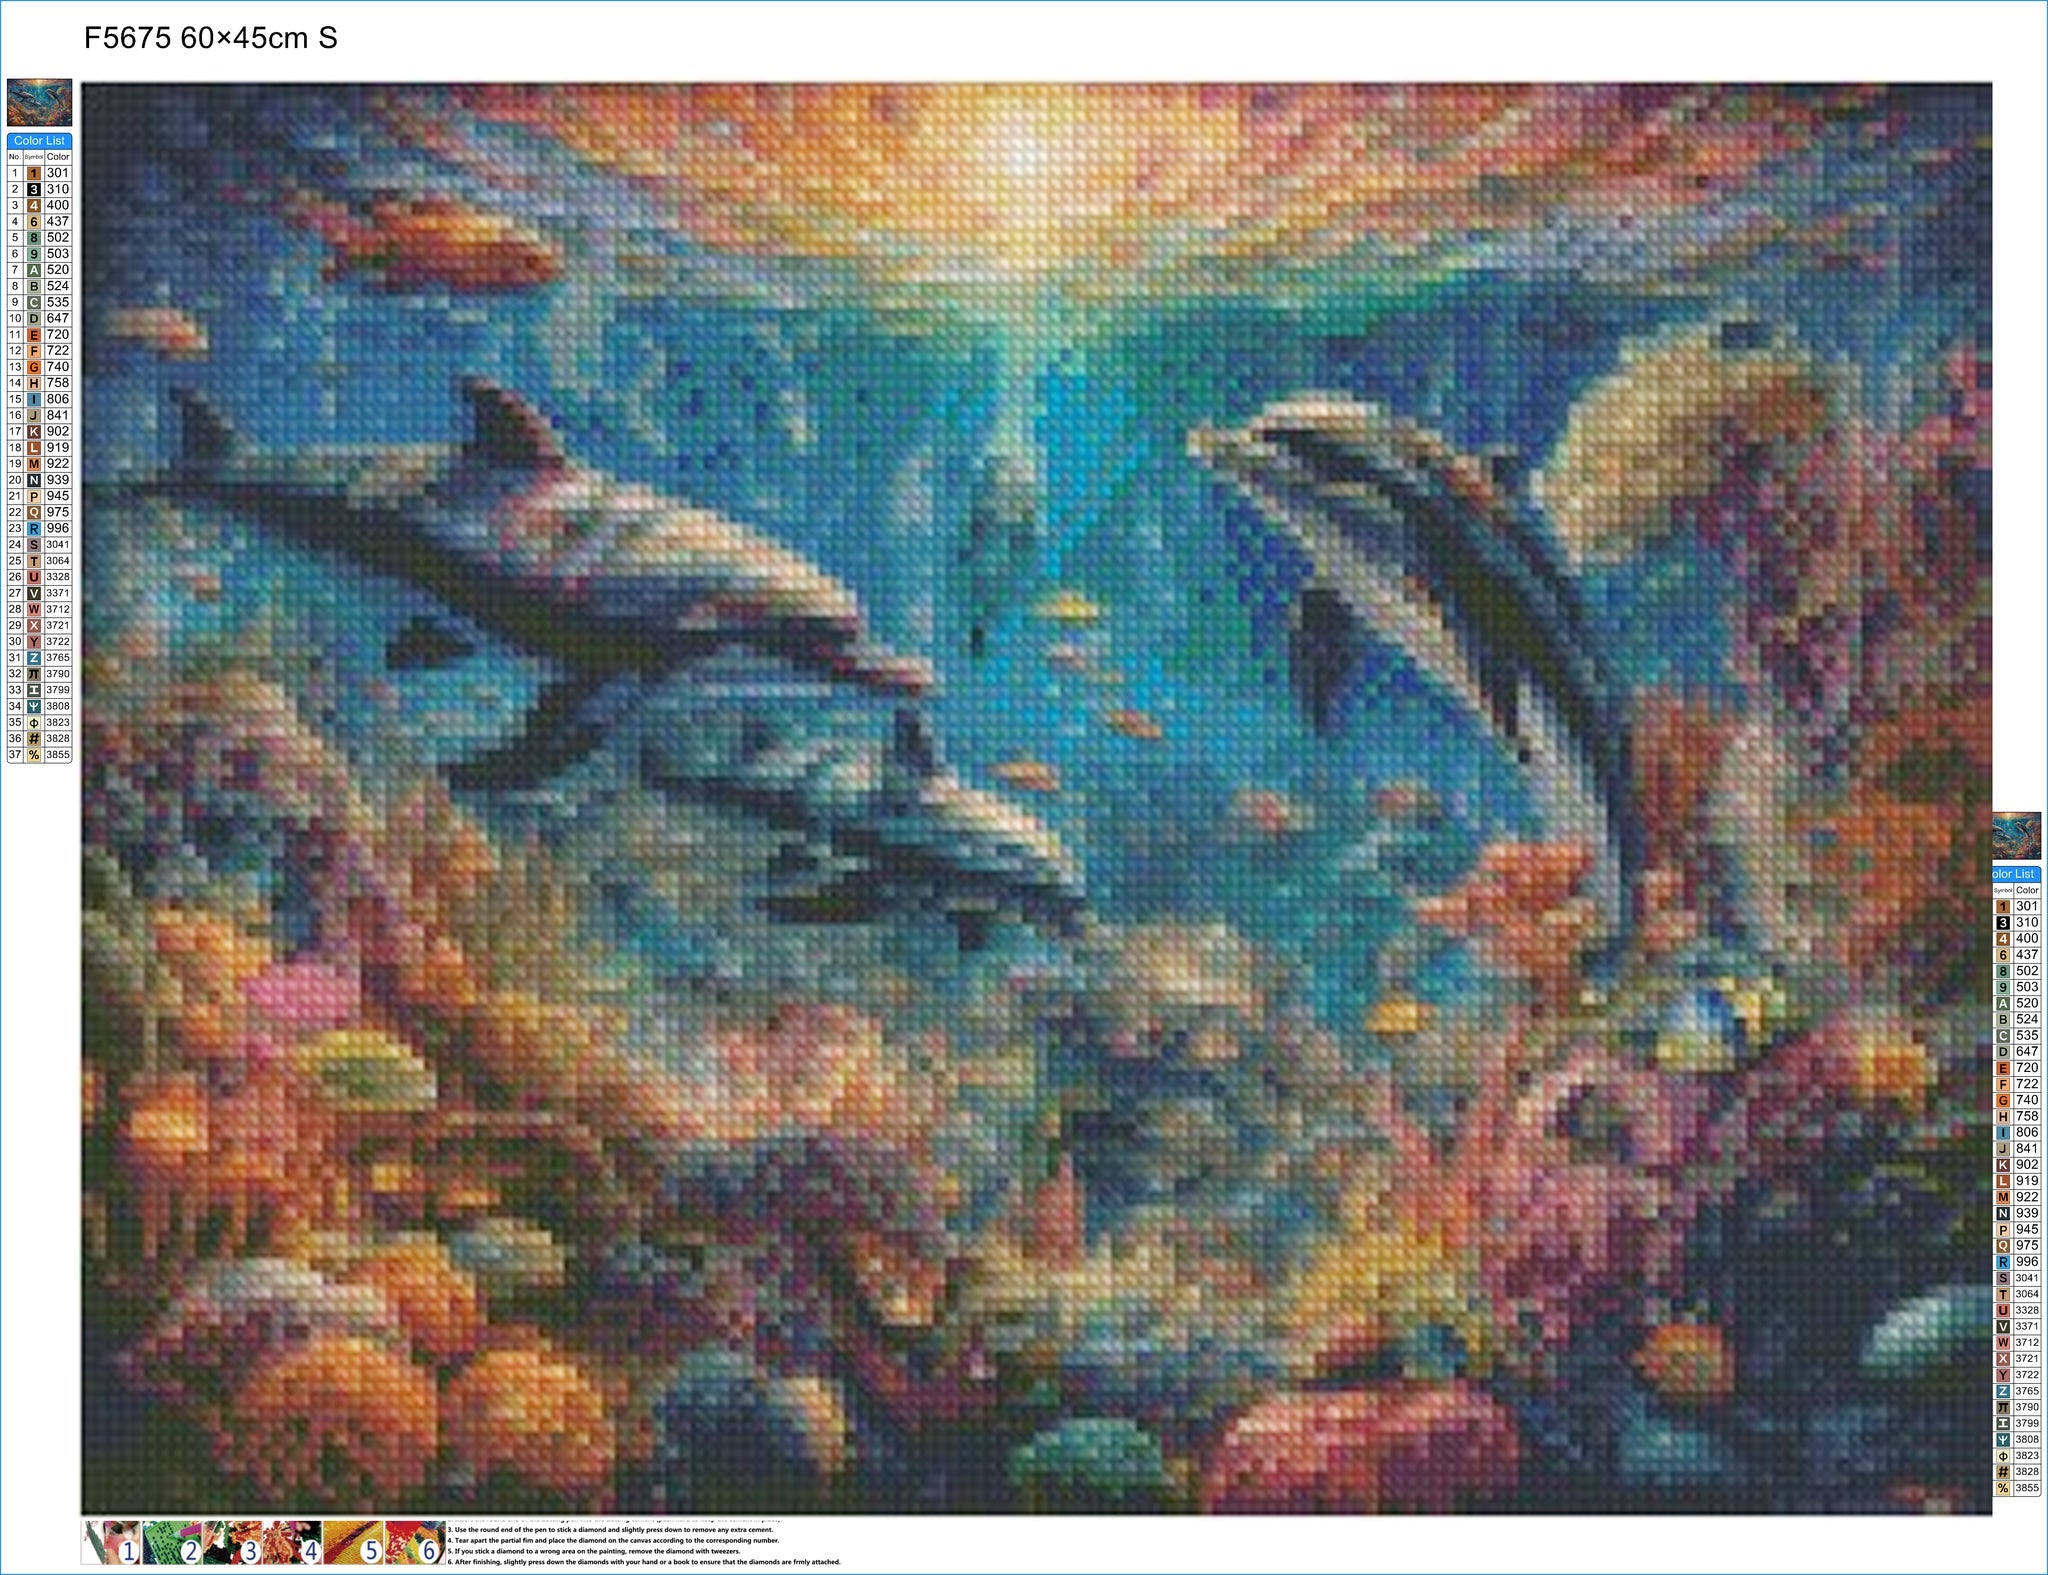 Underwater Symphony - Diamond Kit - Painted Memory